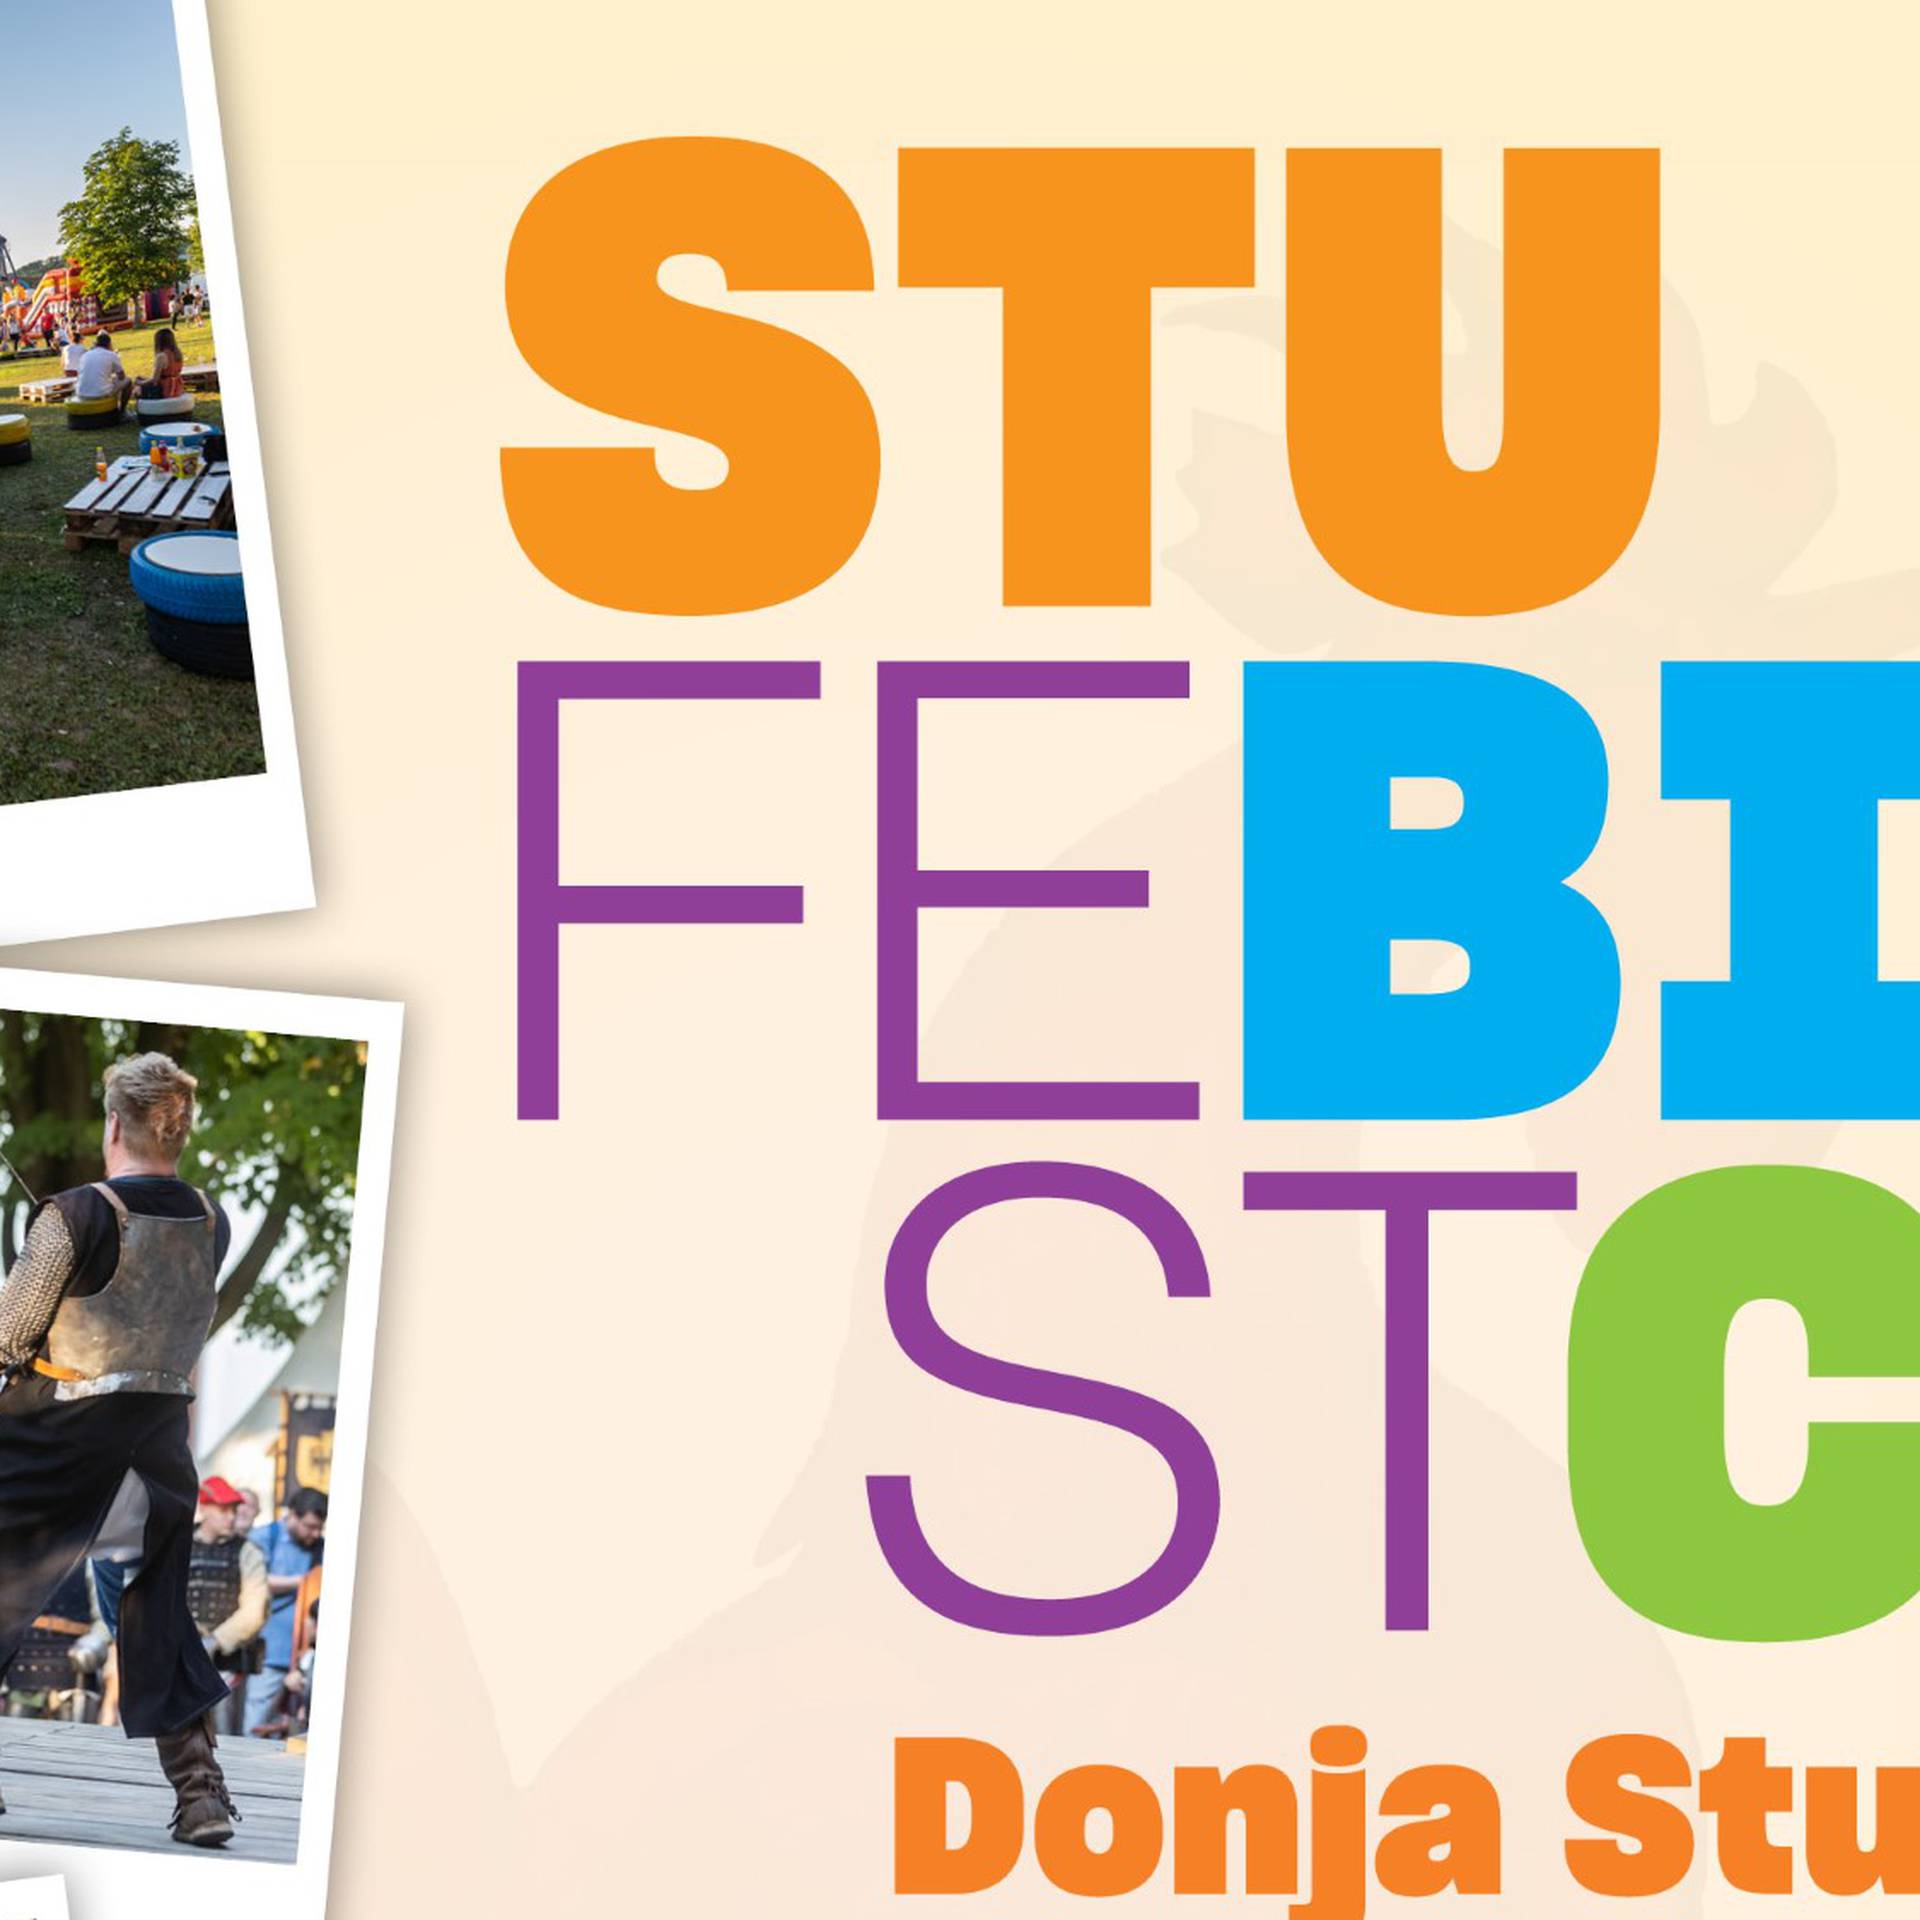 Ne propustite Stubica Fest od 2. do 4.6.2023. koji  nudi bogat kulturni i zabavni program!